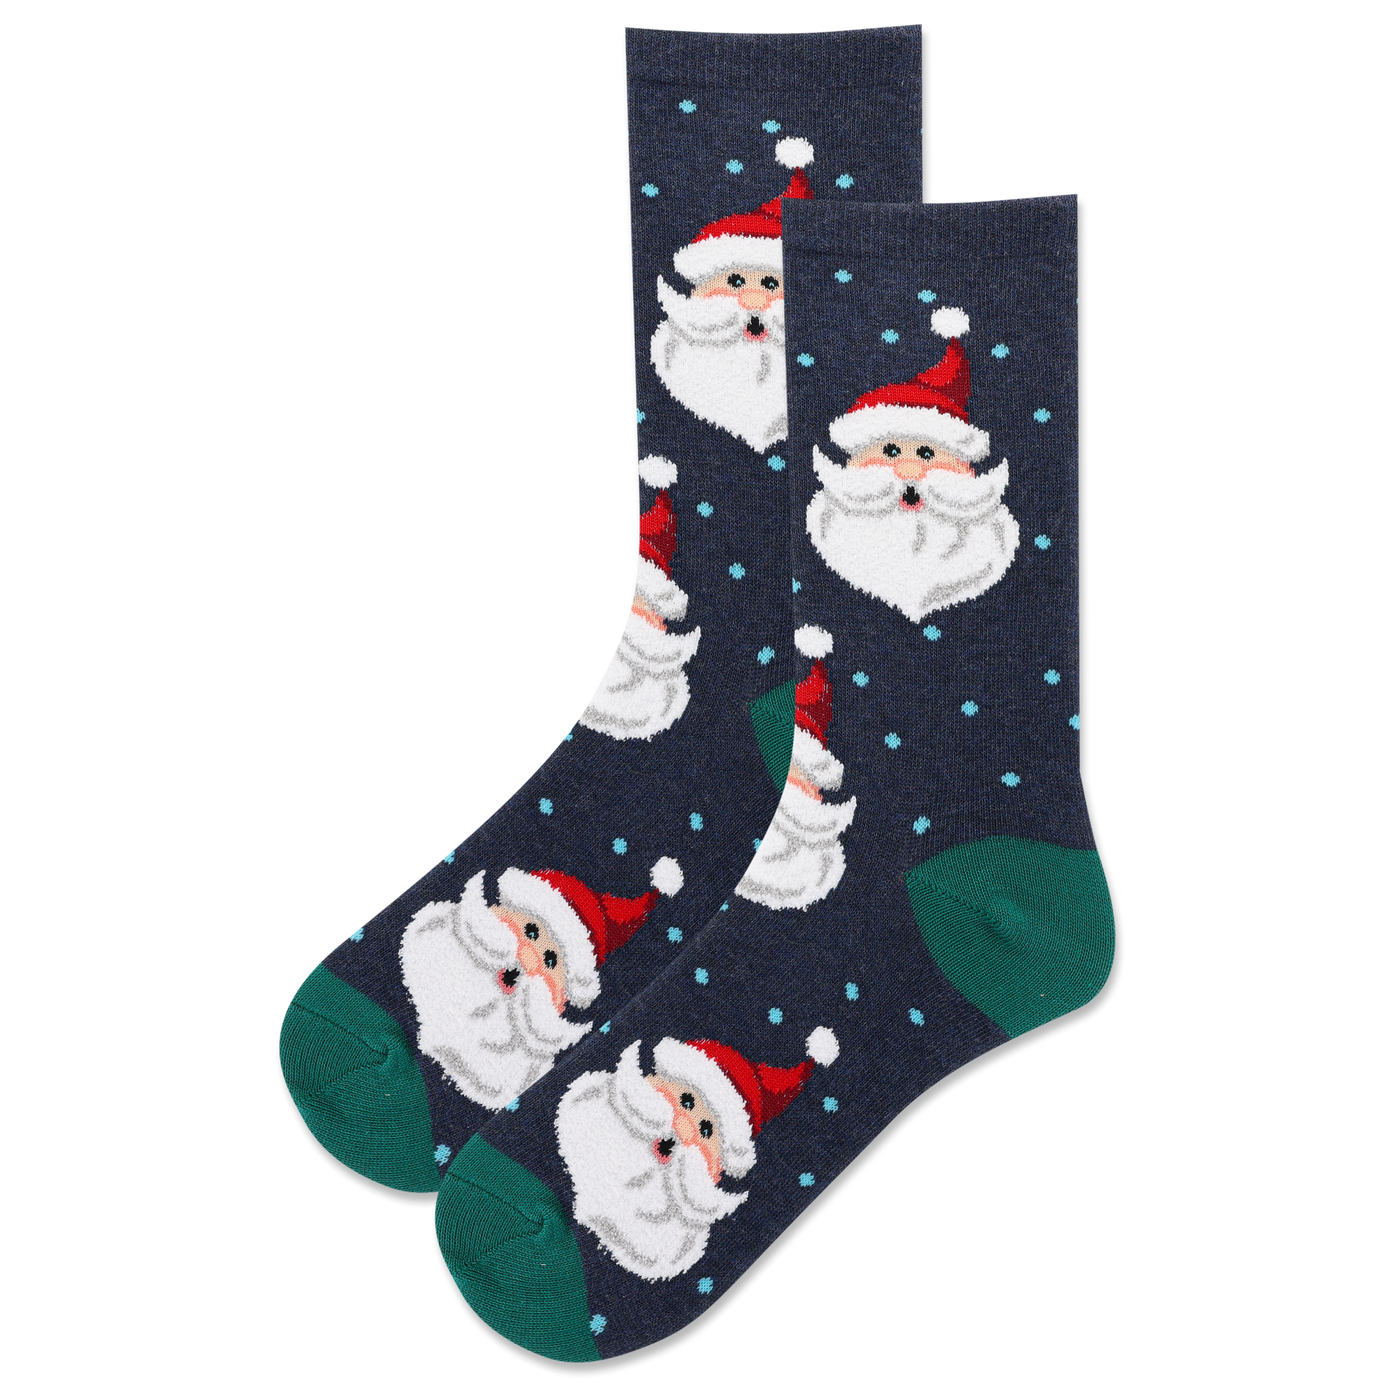 Kids "Fuzzy Santa Head" Crew Socks by Hot Sox